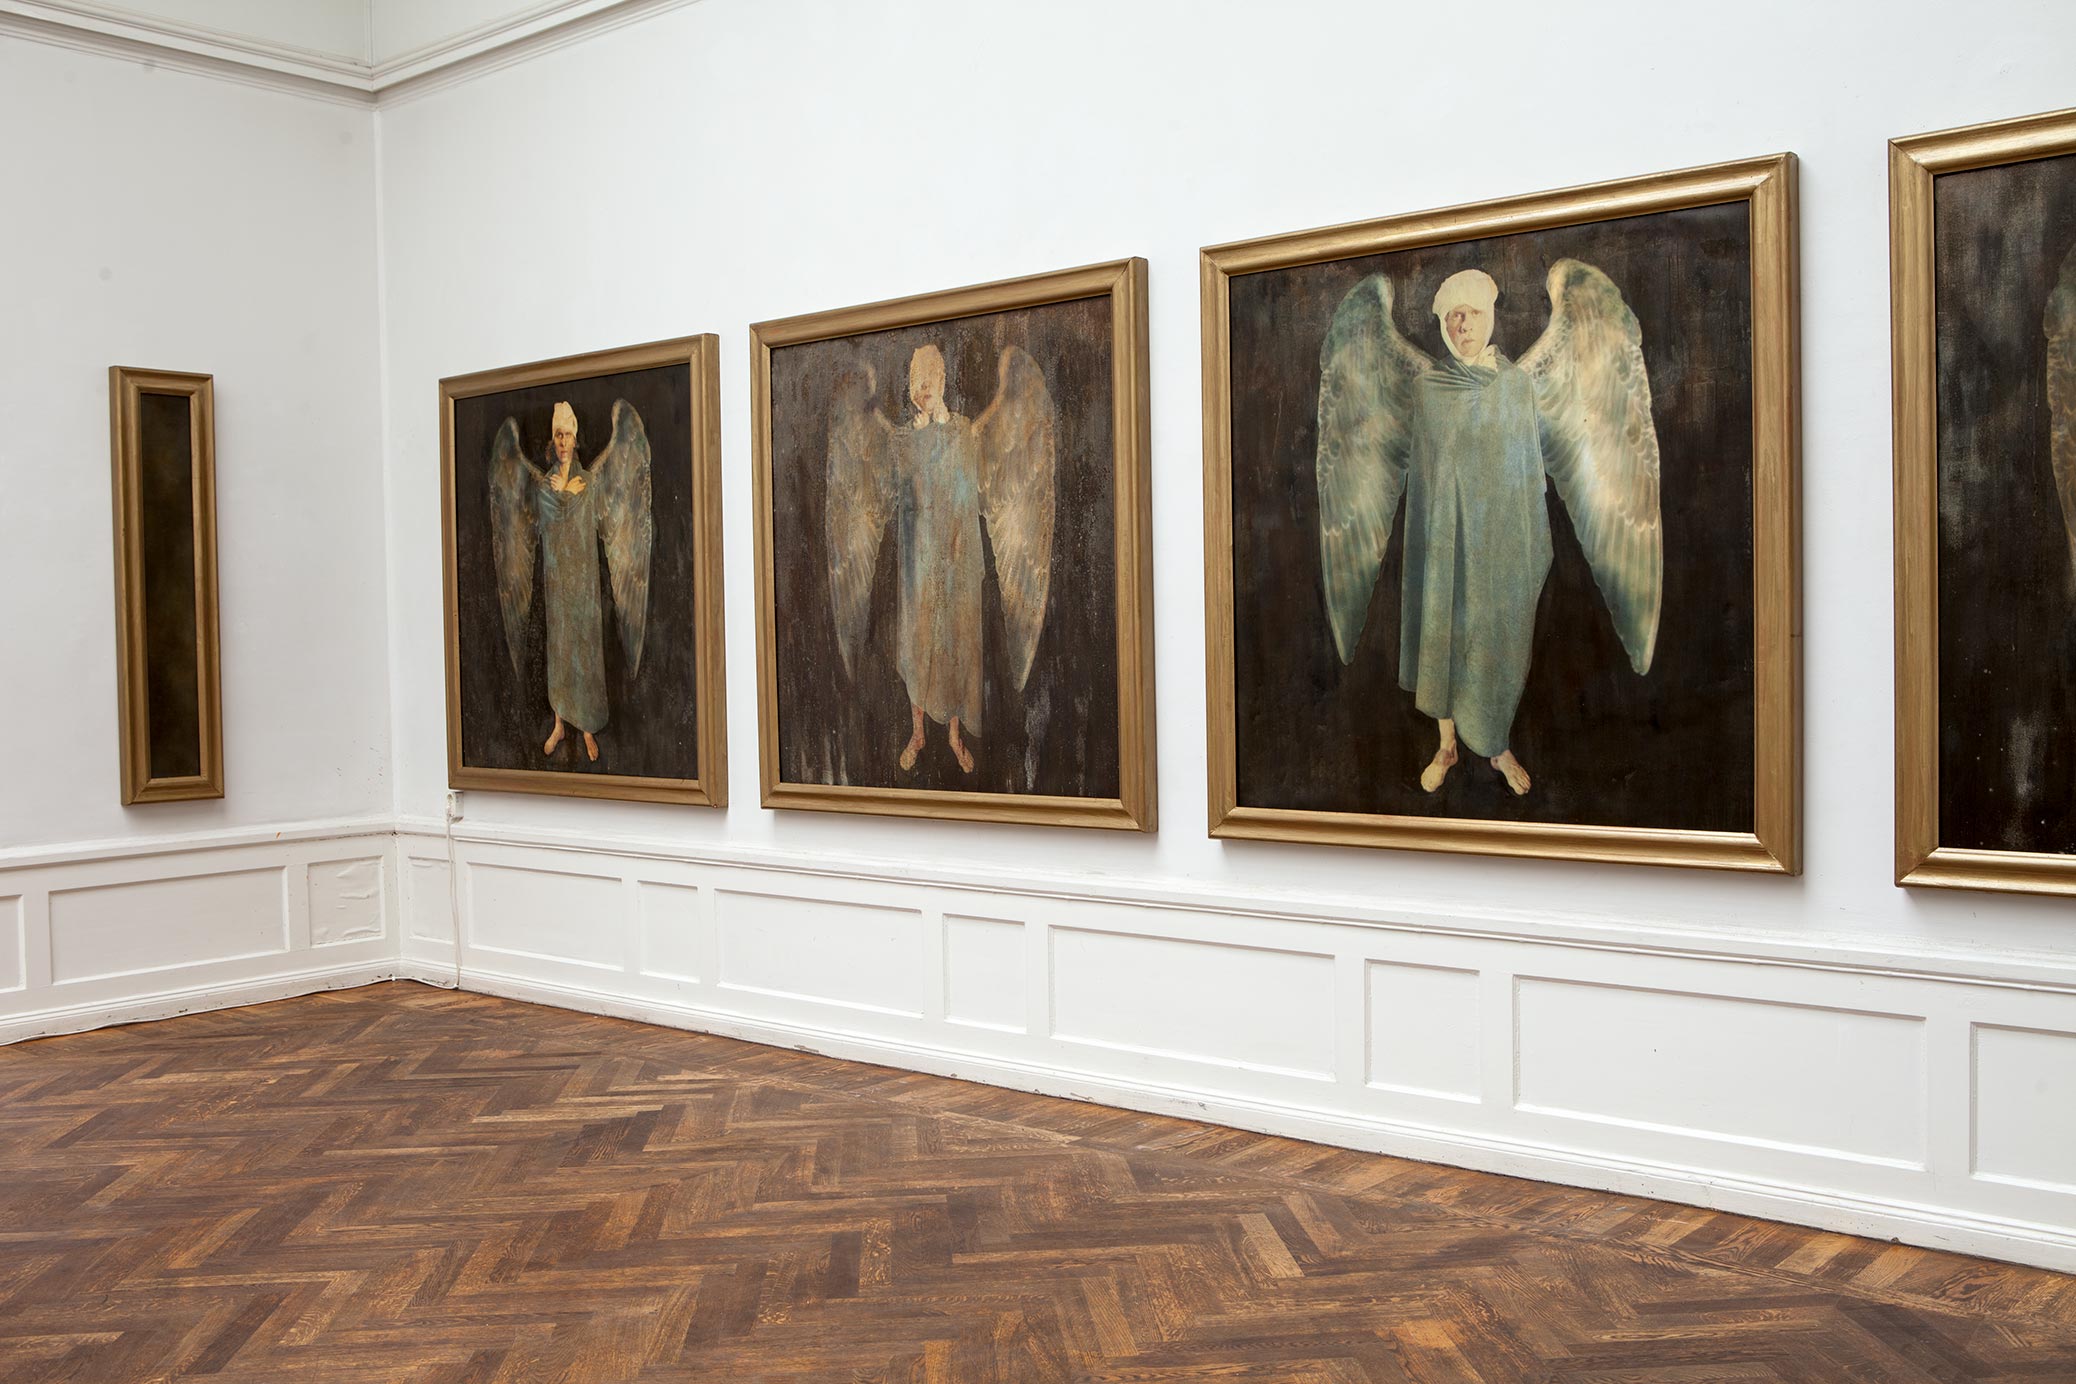 I huvudet på Björn Perborg, utställning på Konstnärshuset. Flygfän, tavlor föreställande skadade änglar.